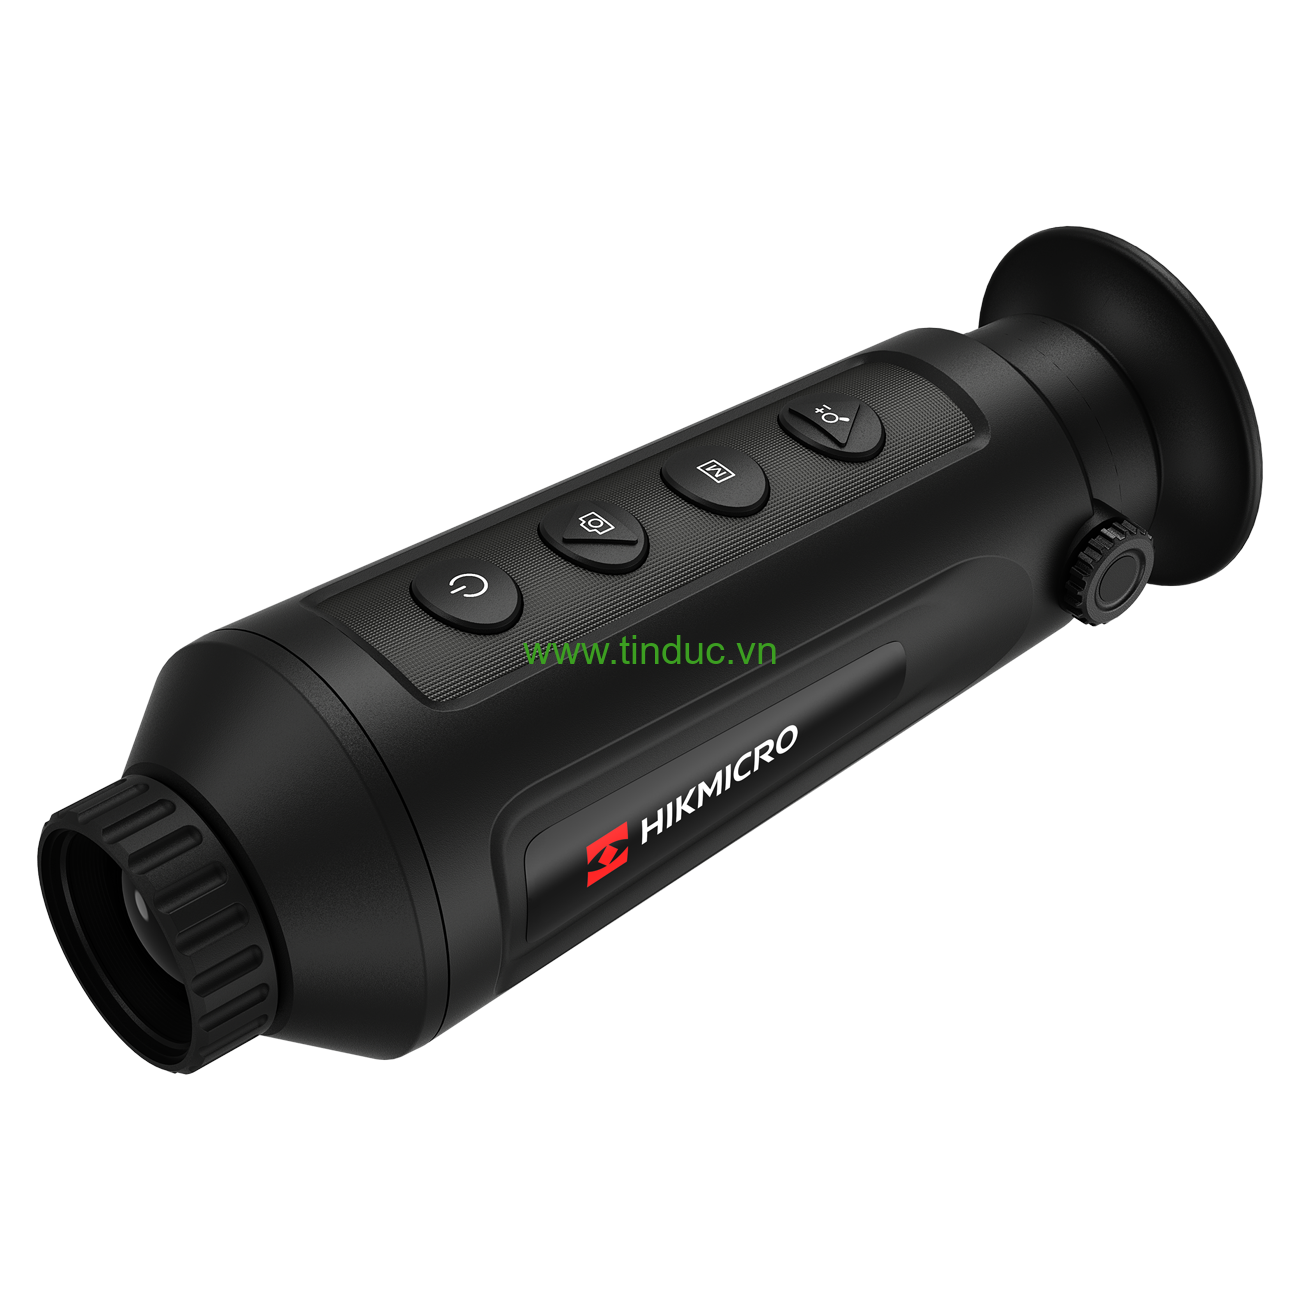 Ống nhòm camera một mắt ảnh nhiệt cầm tay HikMicro LYNX Pro LH25 - Hàng chính hãng